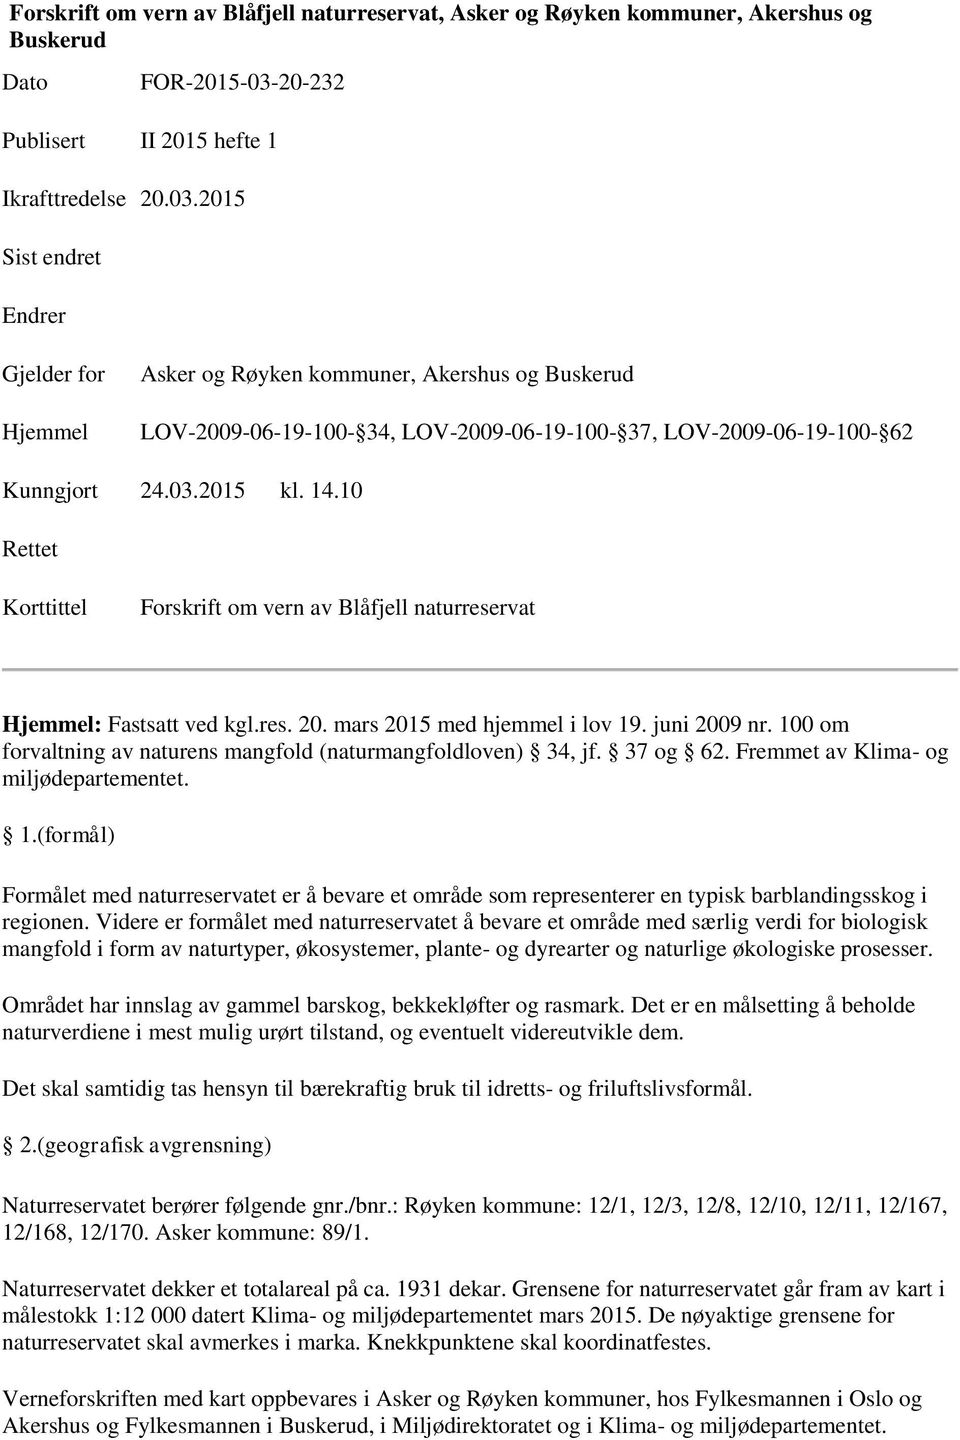 2015 Sist endret Endrer Gjelder for Hjemmel Asker og Røyken kommuner, Akershus og Buskerud LOV-2009-06-19-100- 34, LOV-2009-06-19-100- 37, LOV-2009-06-19-100- 62 Kunngjort 24.03.2015 kl. 14.